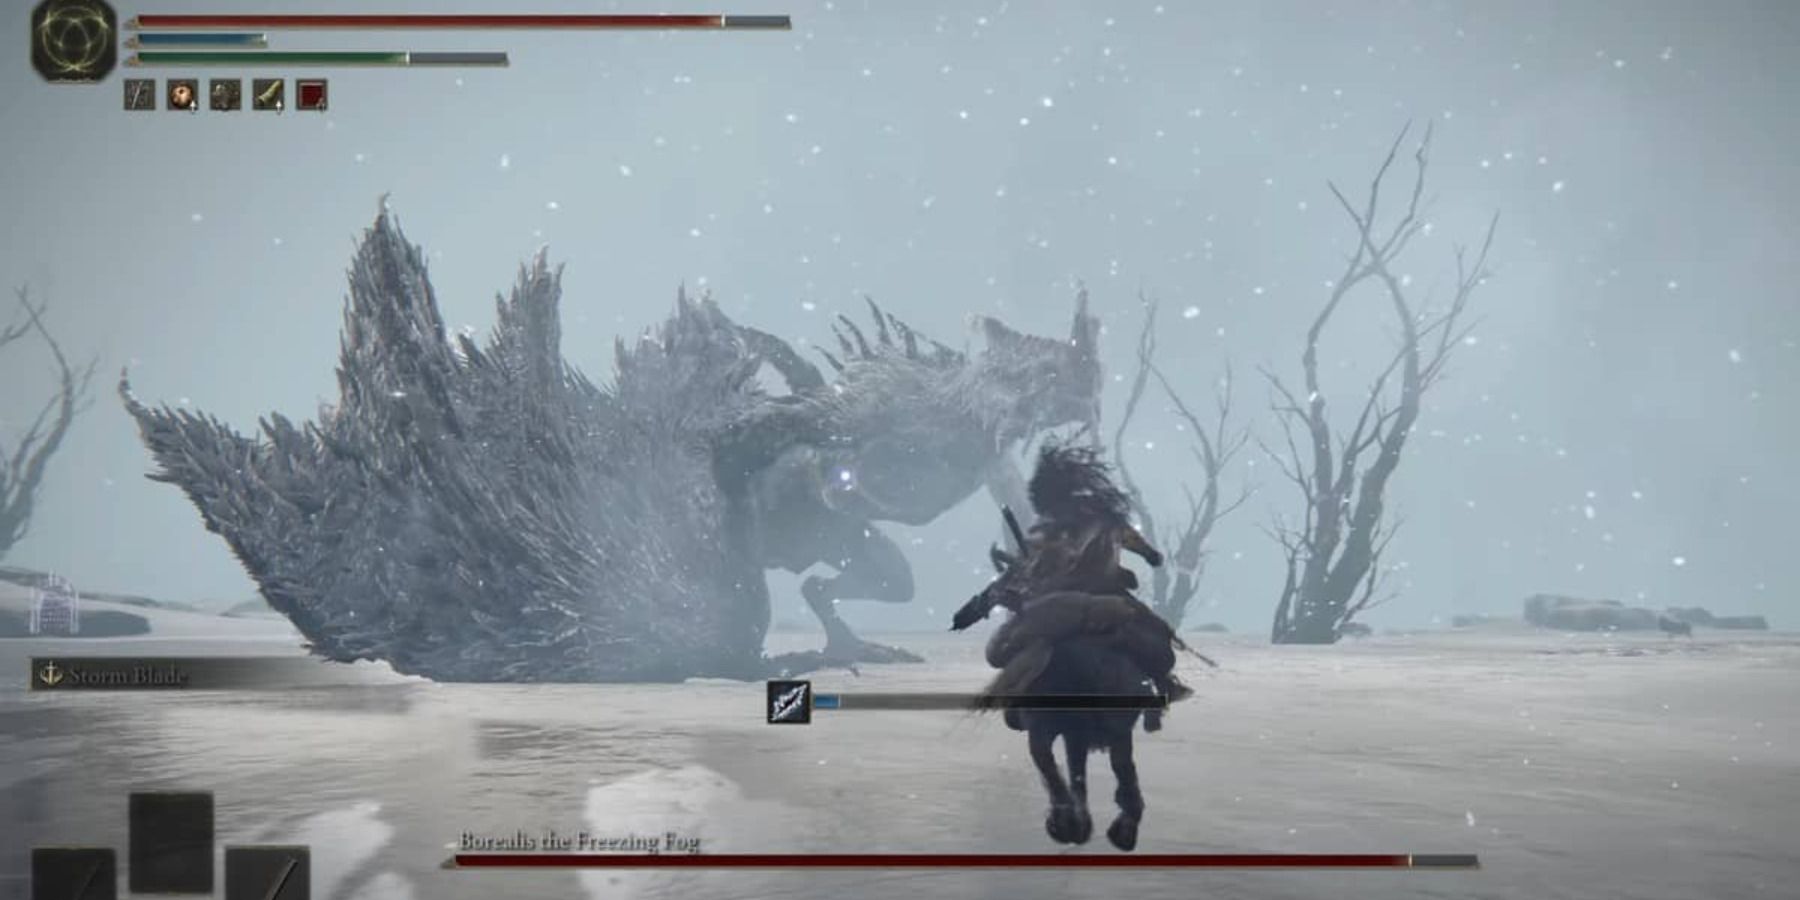 Игрок сражается с Бореалисом, Ледяным Туманом, в Элден Ринге.